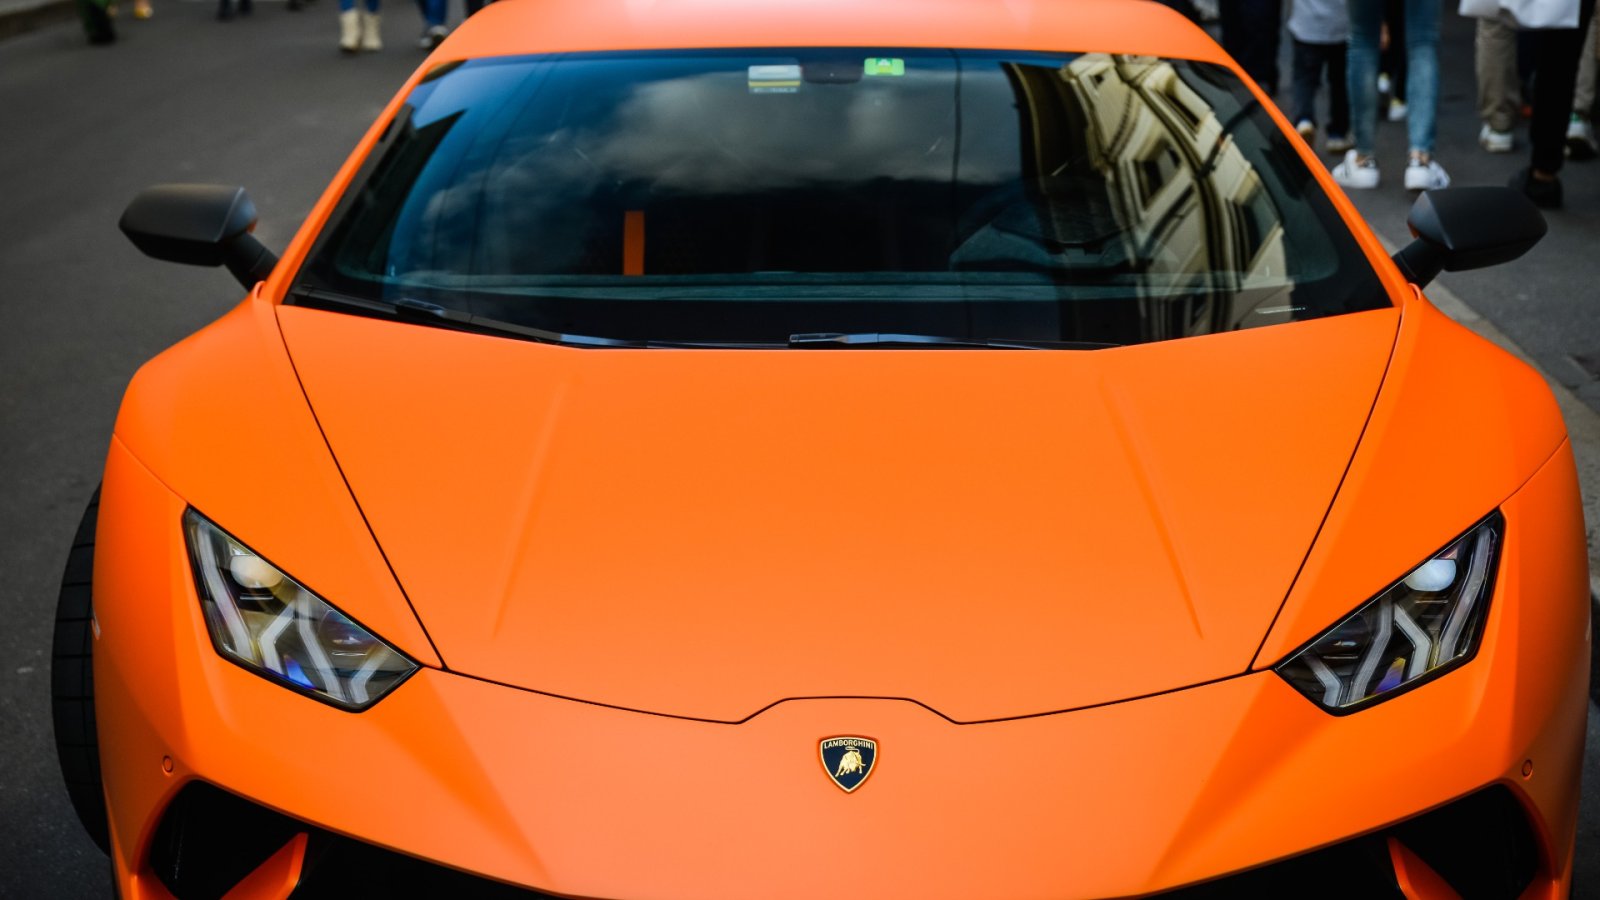 Lamborghini e Technics revelam plataforma giratória inspirada em supercarros de edição limitada